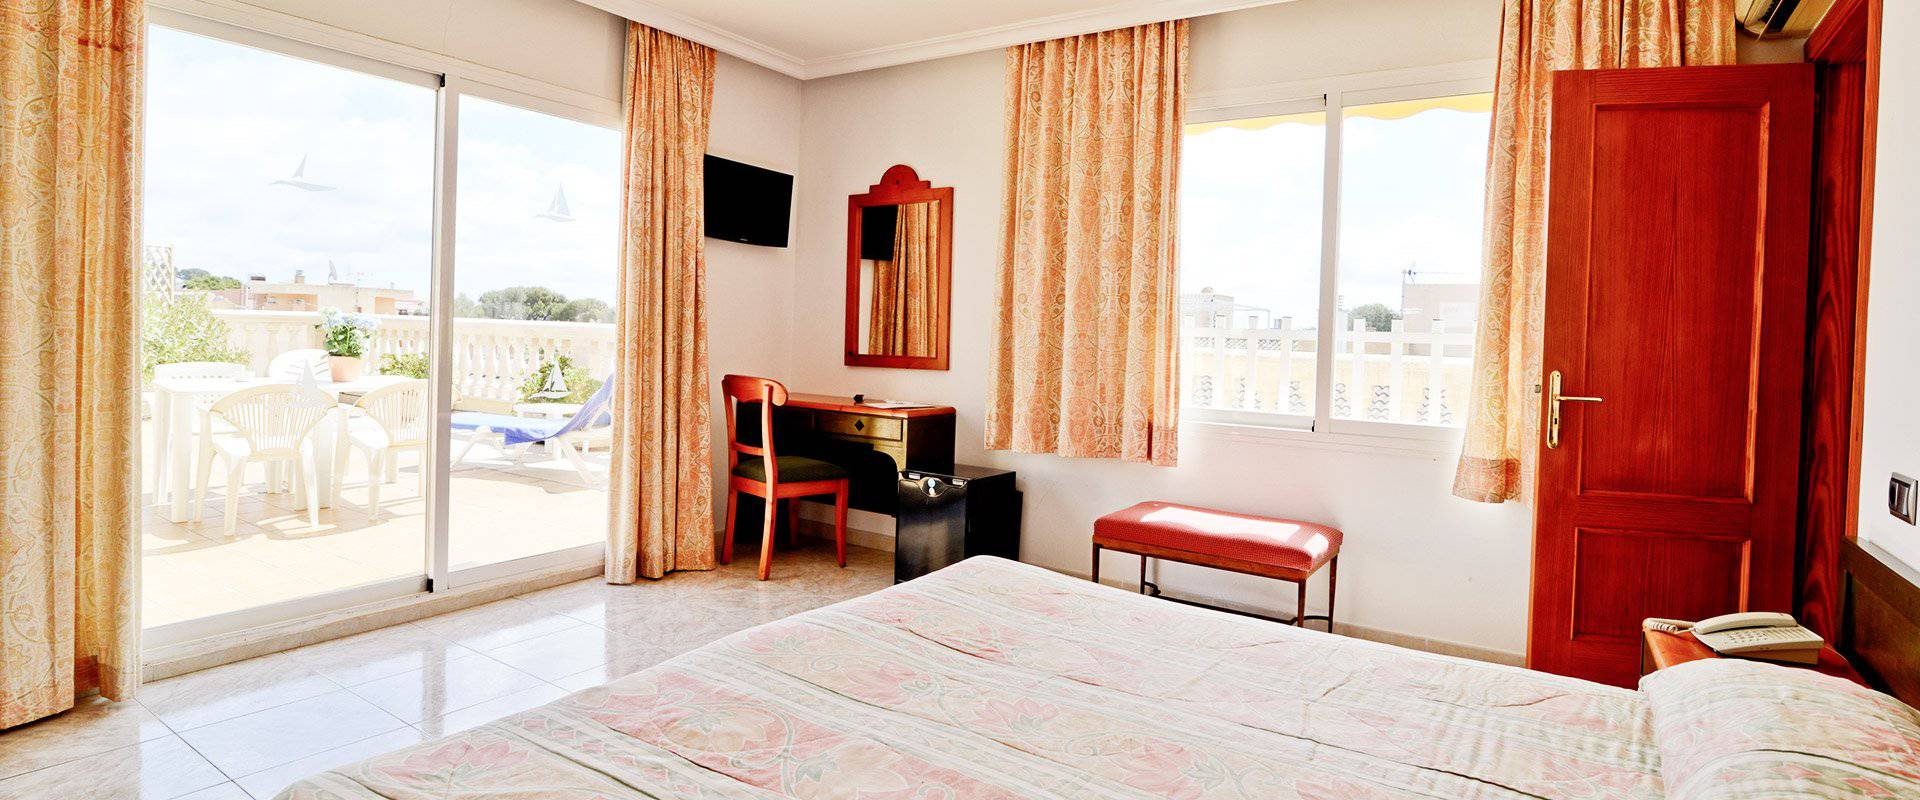 Amplias y cómodas habitaciones Hotel Amorós Cala Ratjada, Mallorca